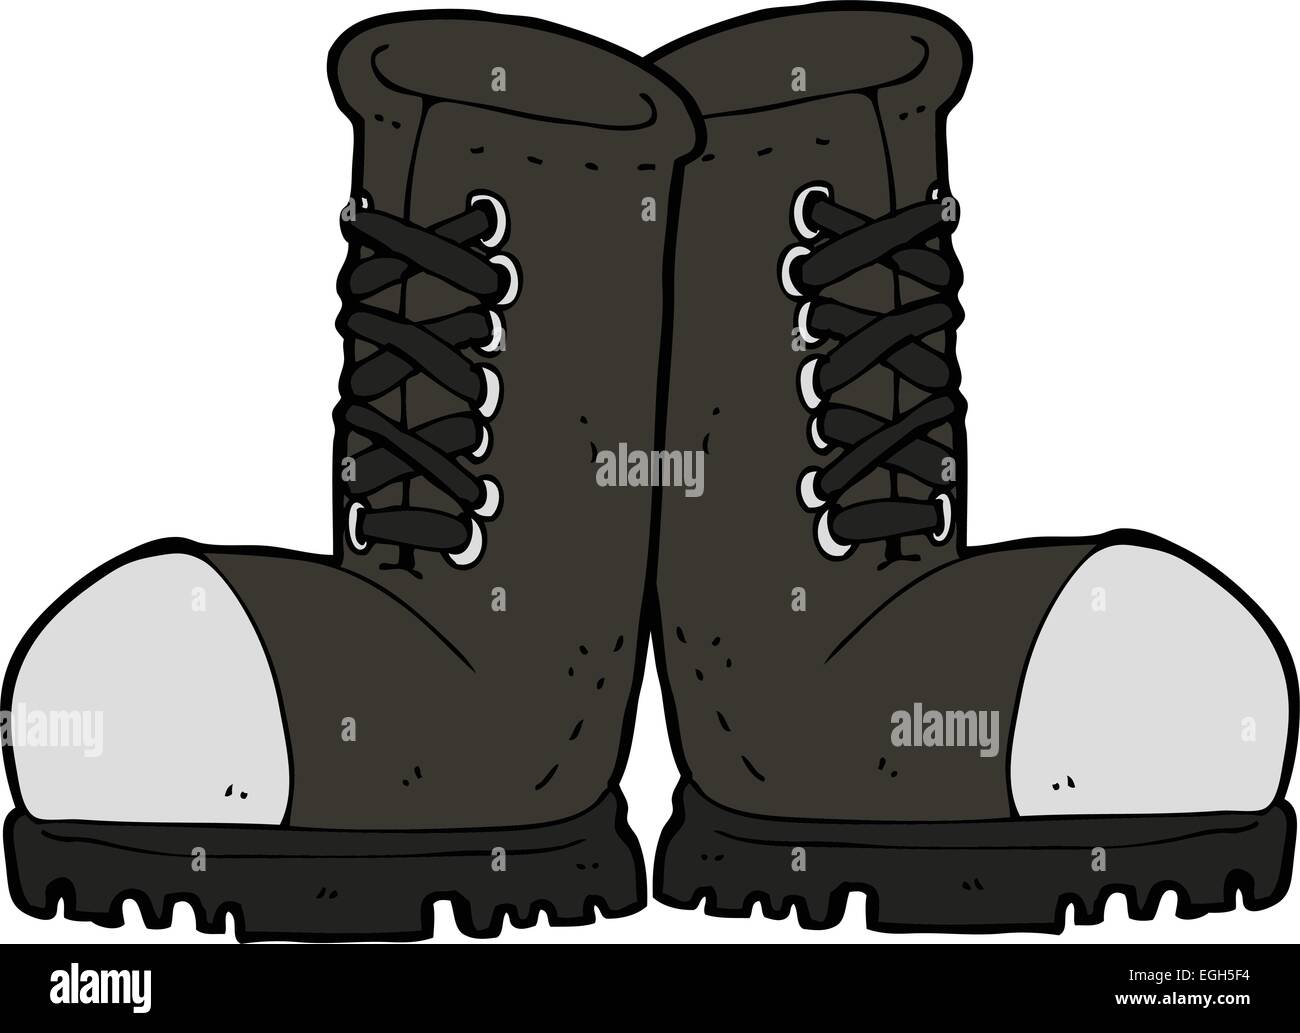 cartoon steel toe cap boots Stock Vector Image & Art - Alamy